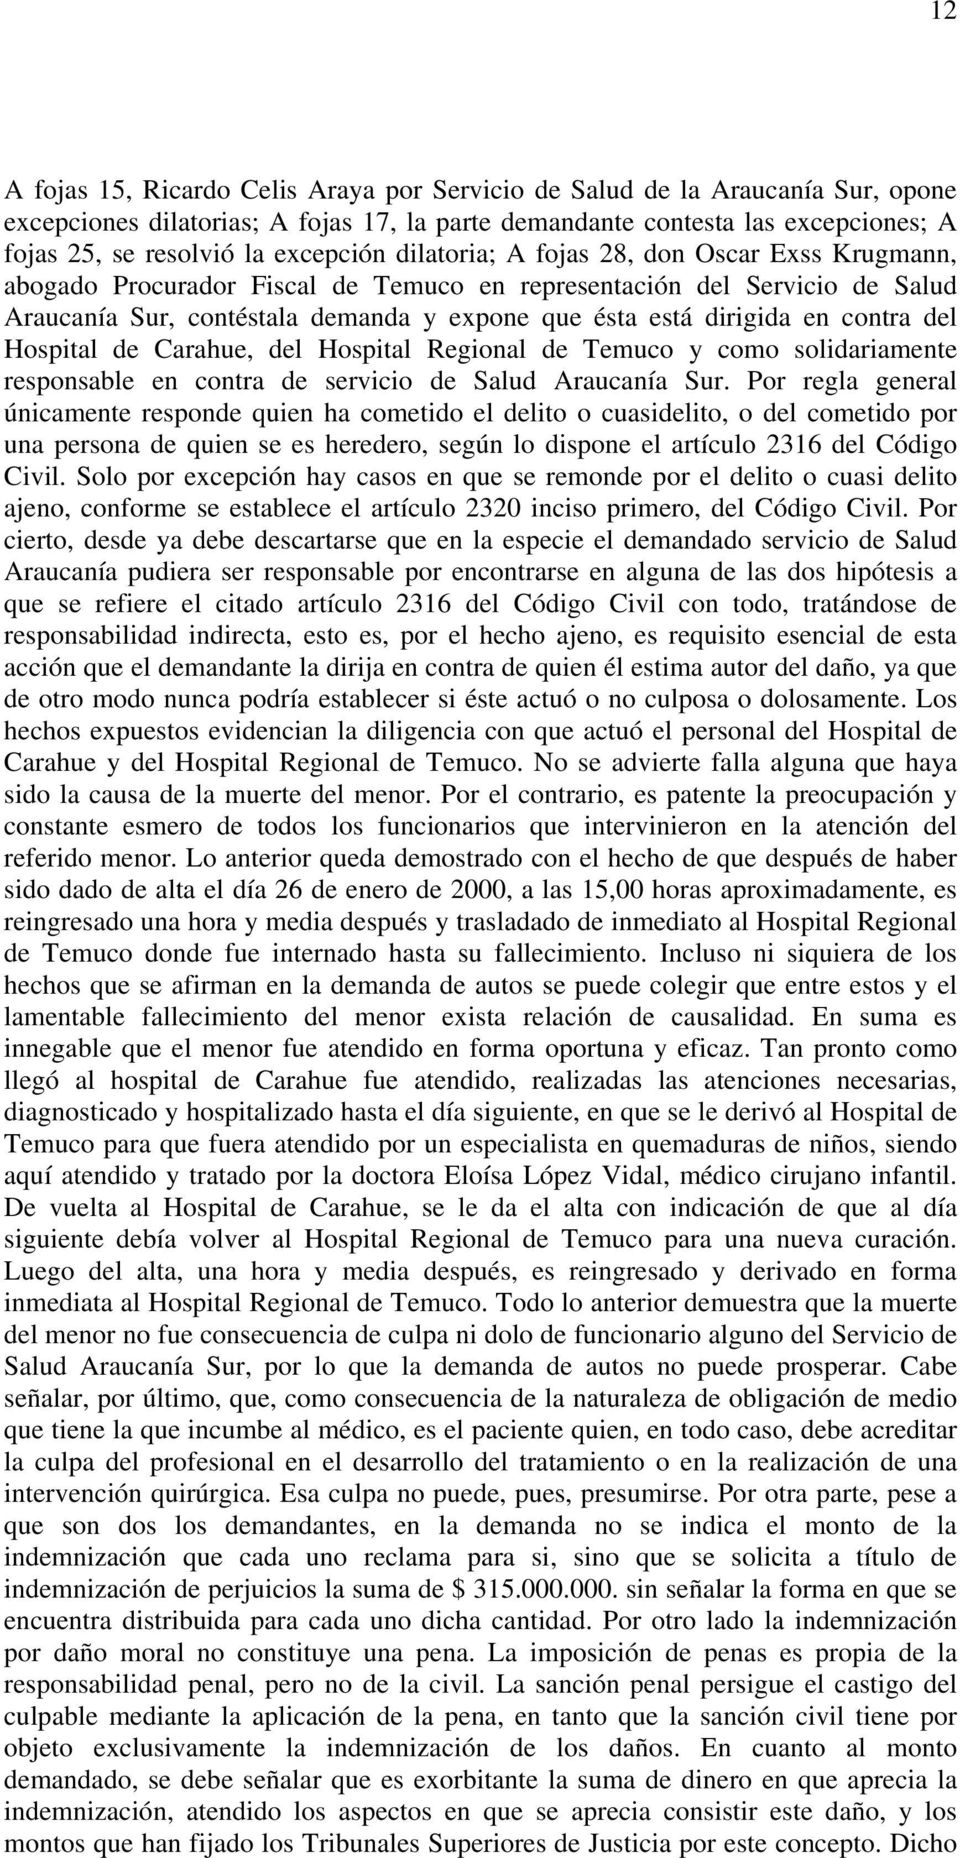 del Hospital de Carahue, del Hospital Regional de Temuco y como solidariamente responsable en contra de servicio de Salud Araucanía Sur.